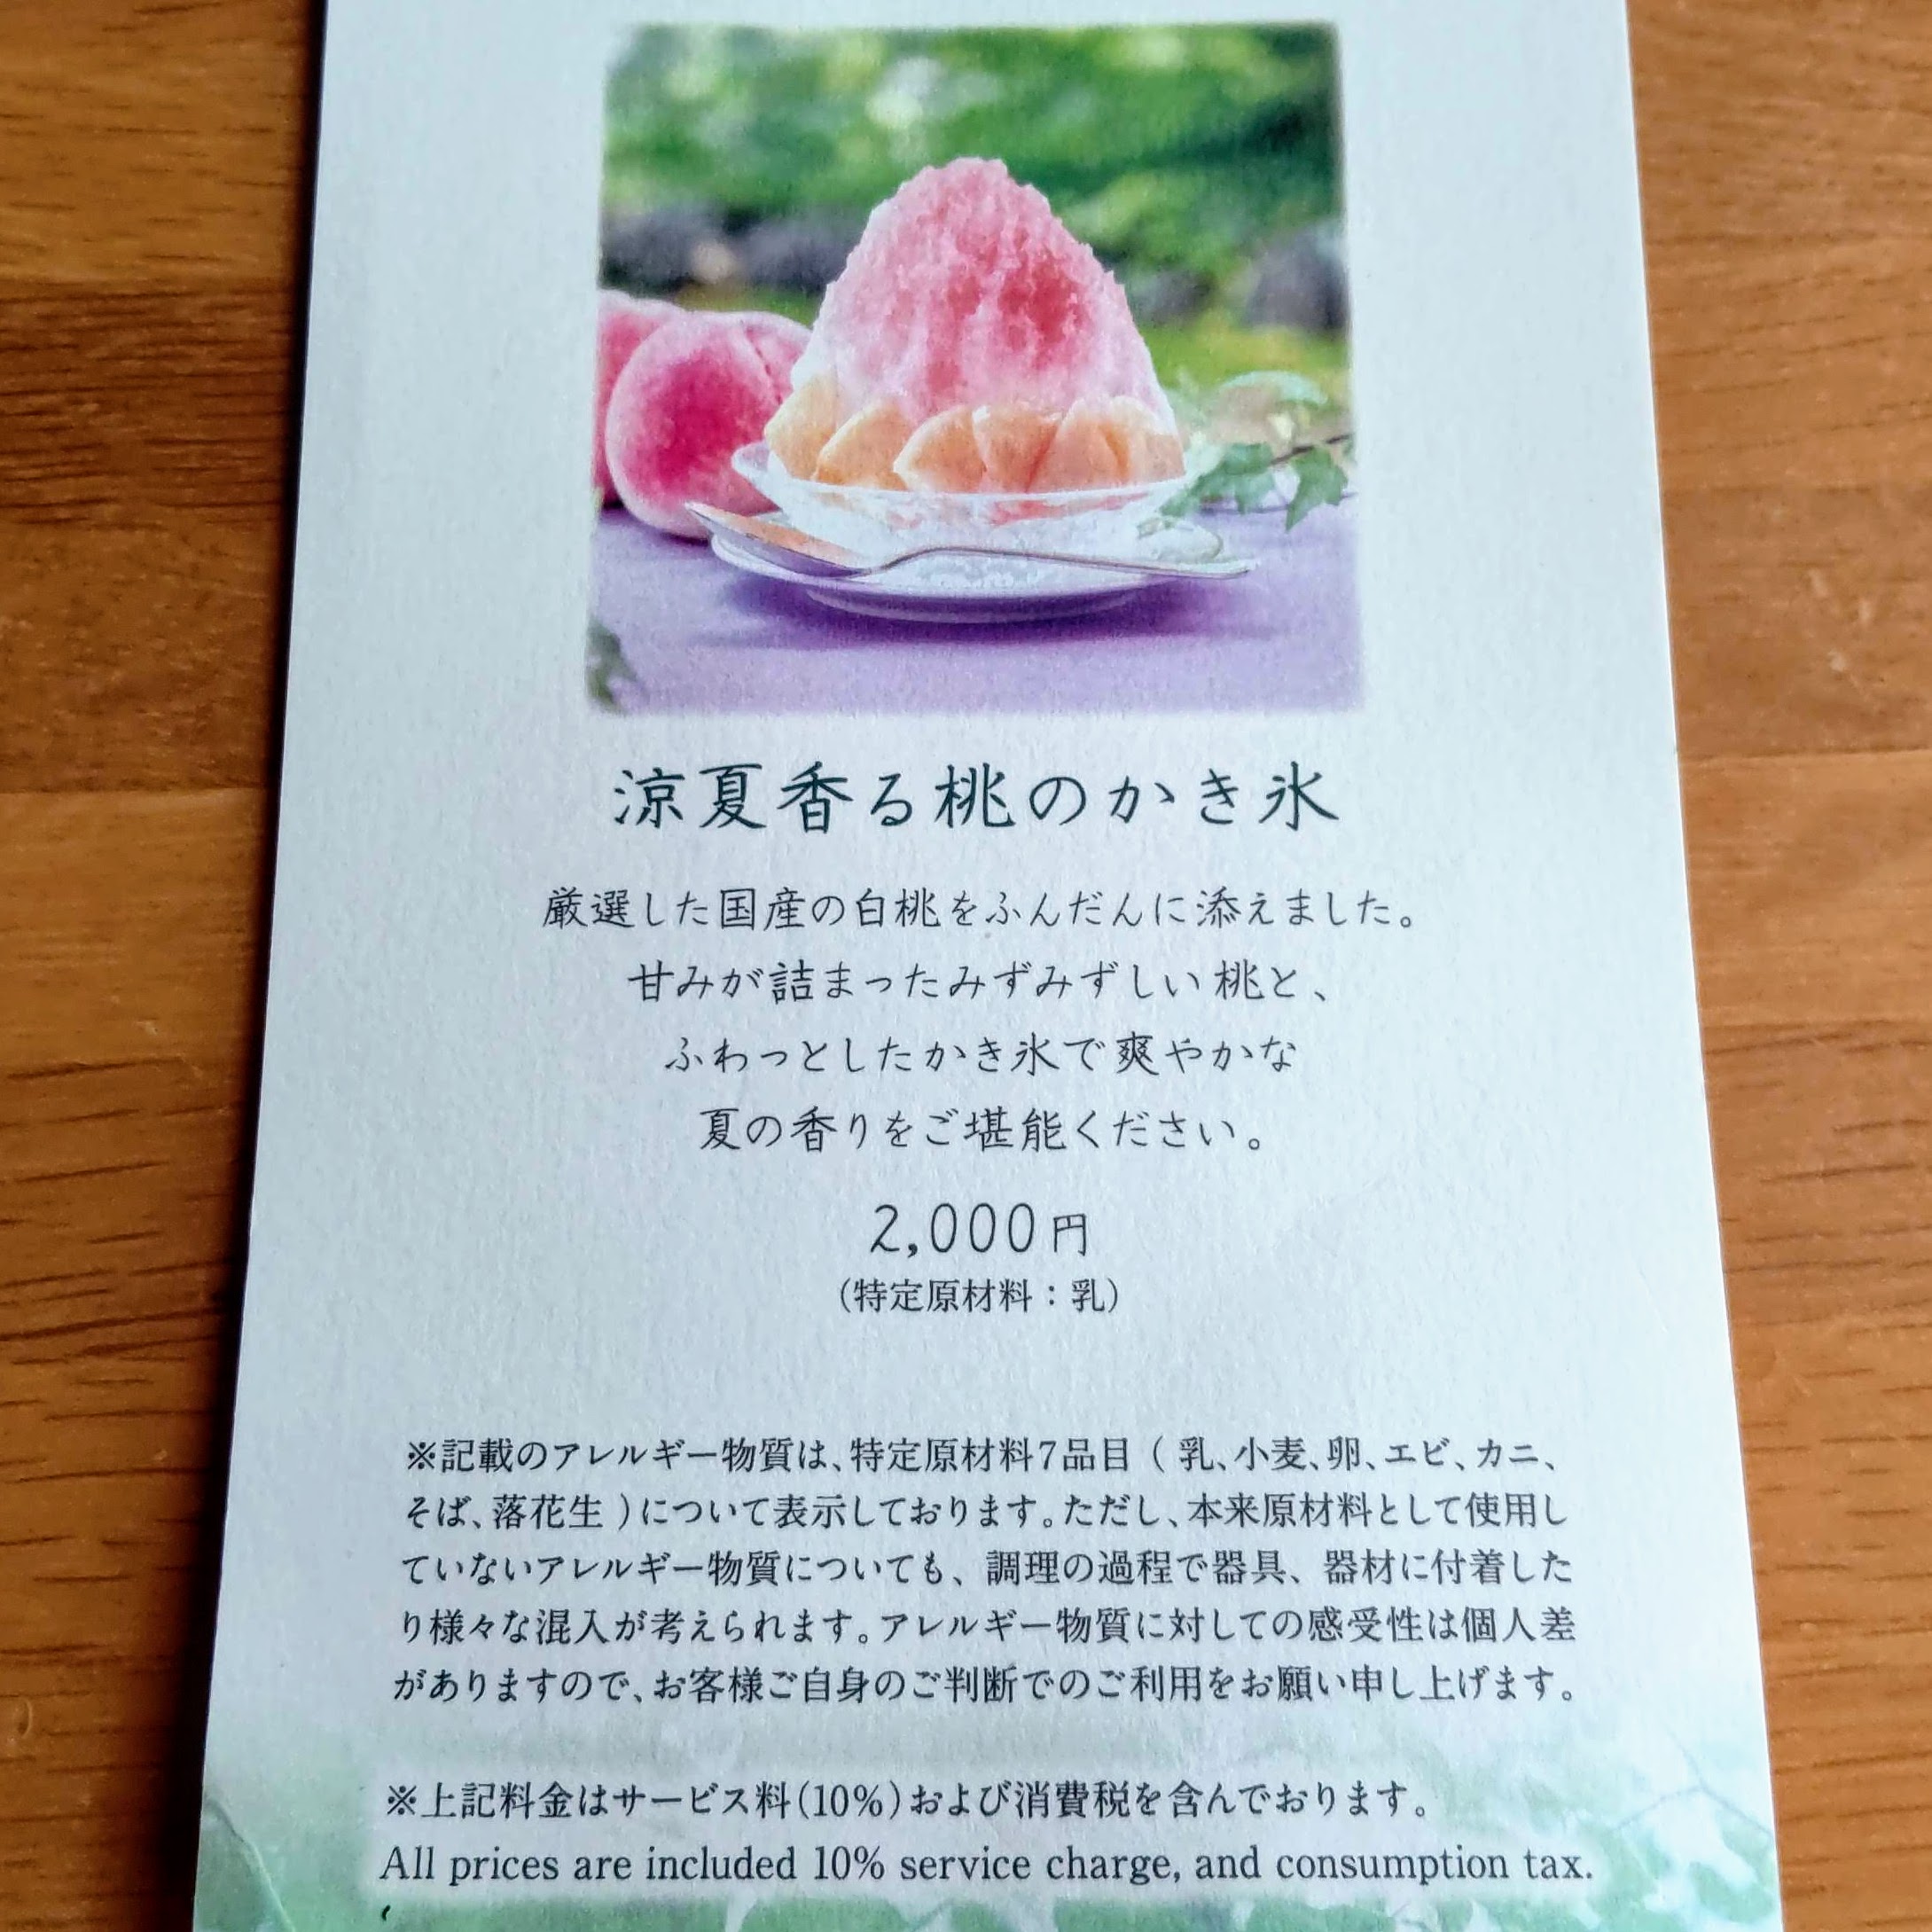 長野県北佐久郡 万平ホテル カフェテラス 涼夏香る桃のかき氷